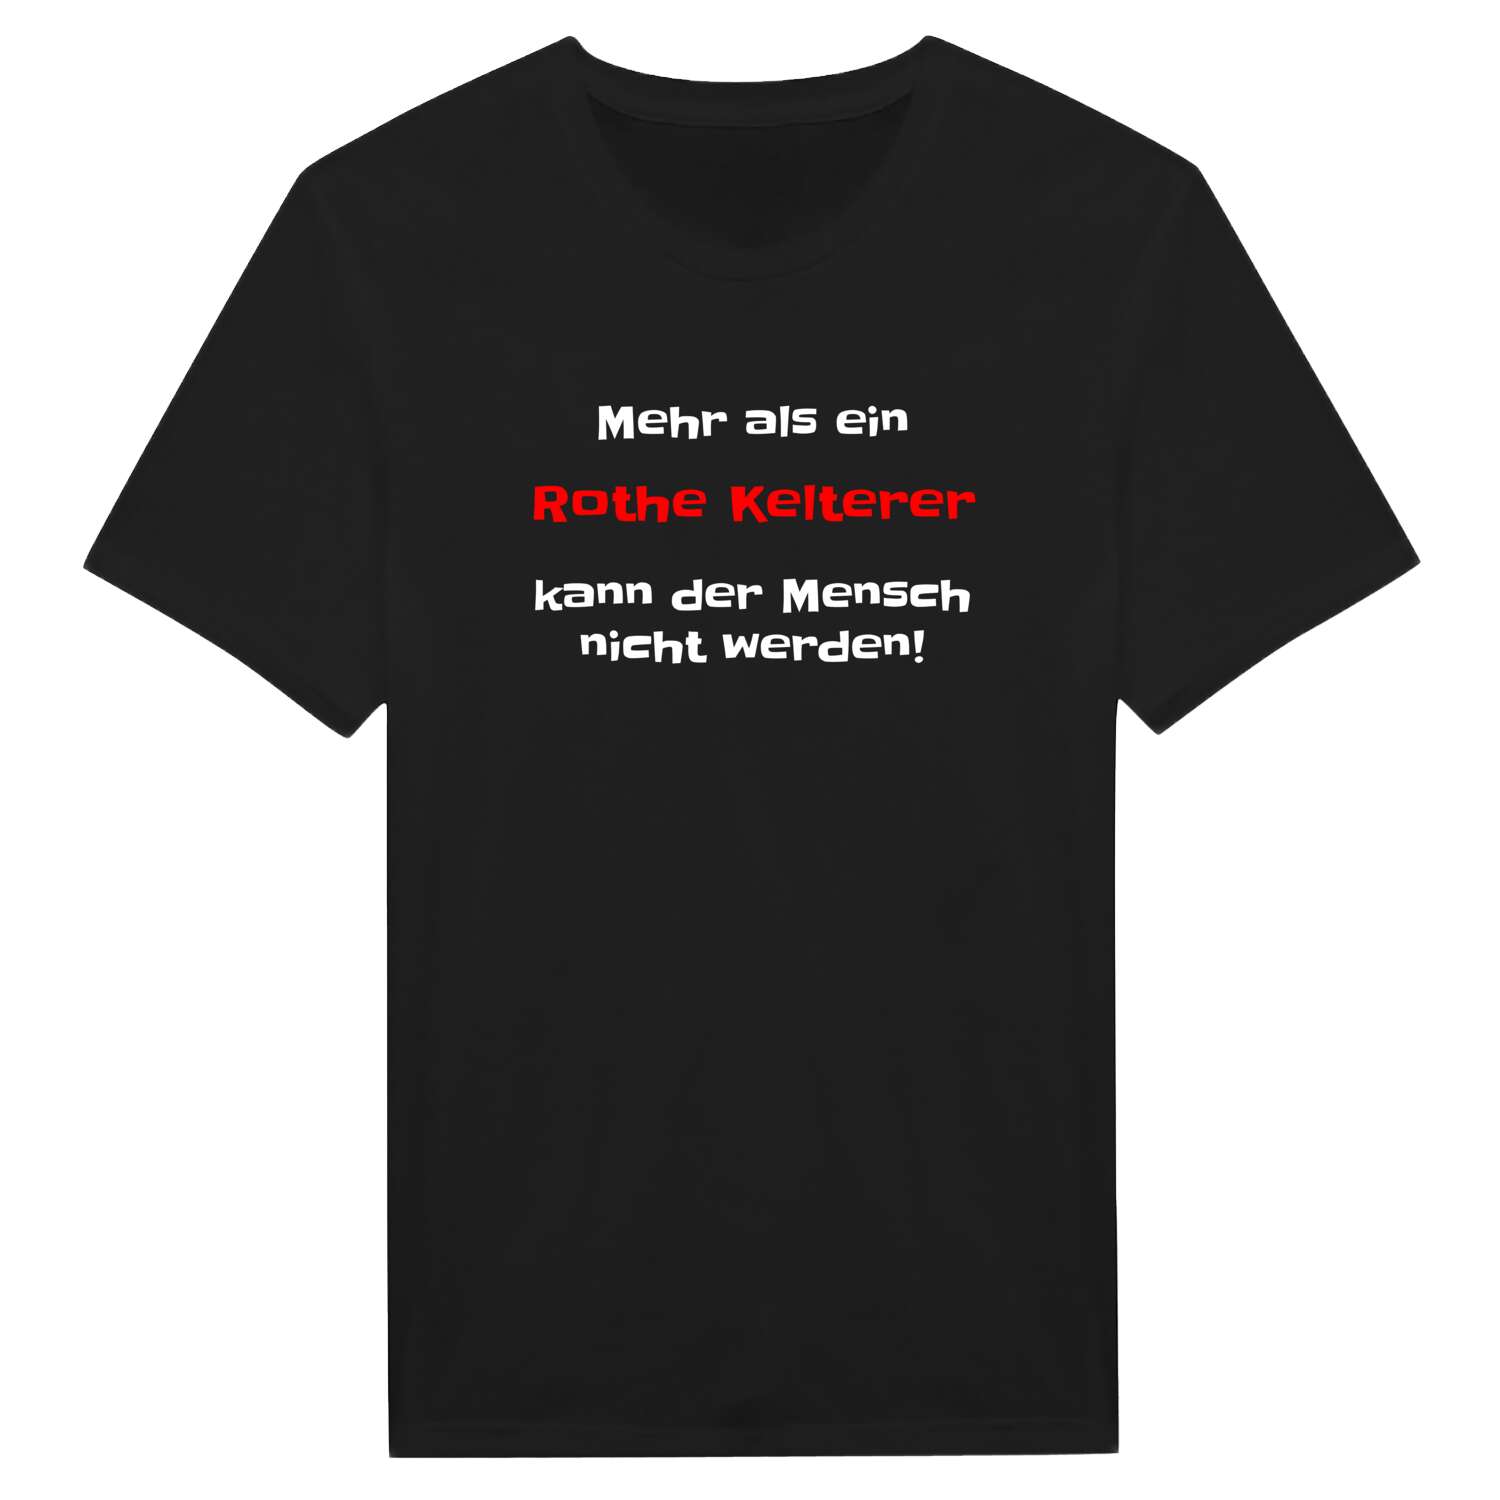 Rothe Kelter T-Shirt »Mehr als ein«